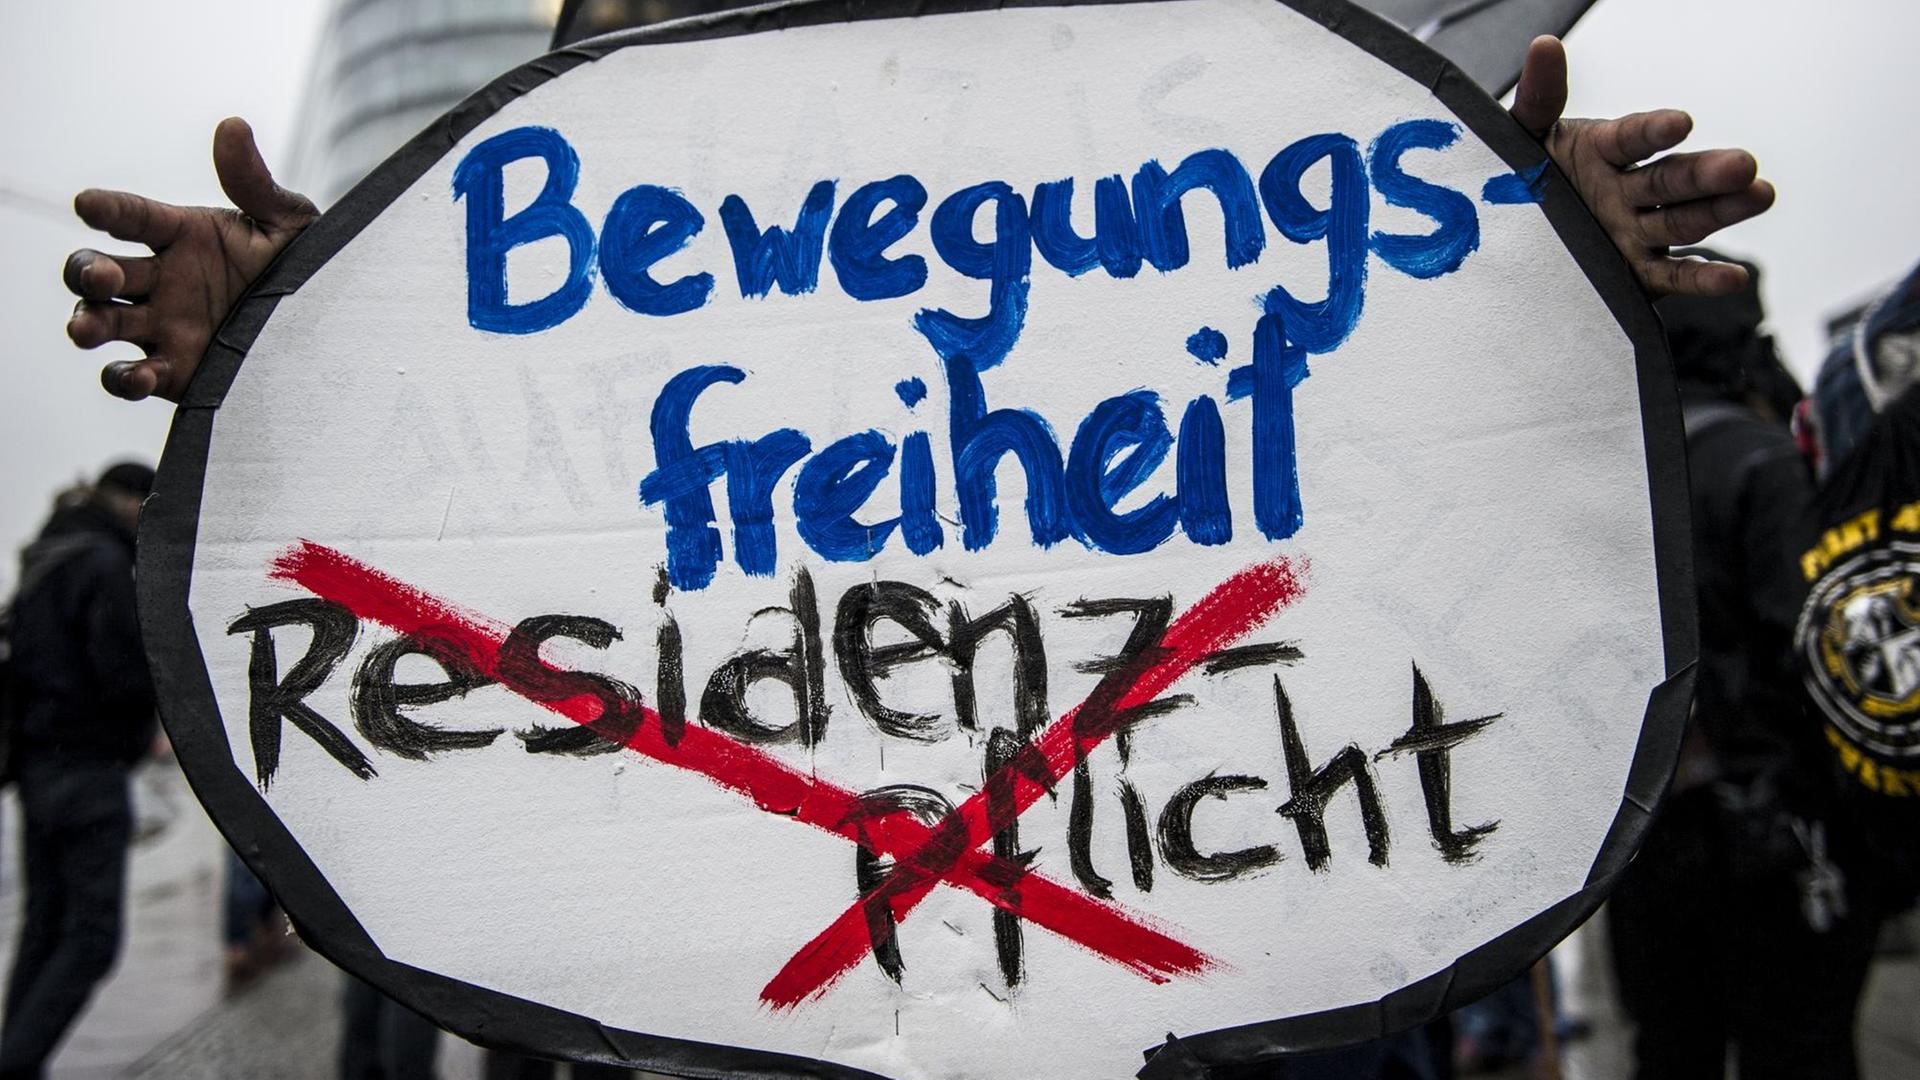 Auf einem Schild bei einer Demonstration steht der Schriftzug: "Bewegungsfreiheit", darunter, rot durchgestrichen: "Residenzpflicht".